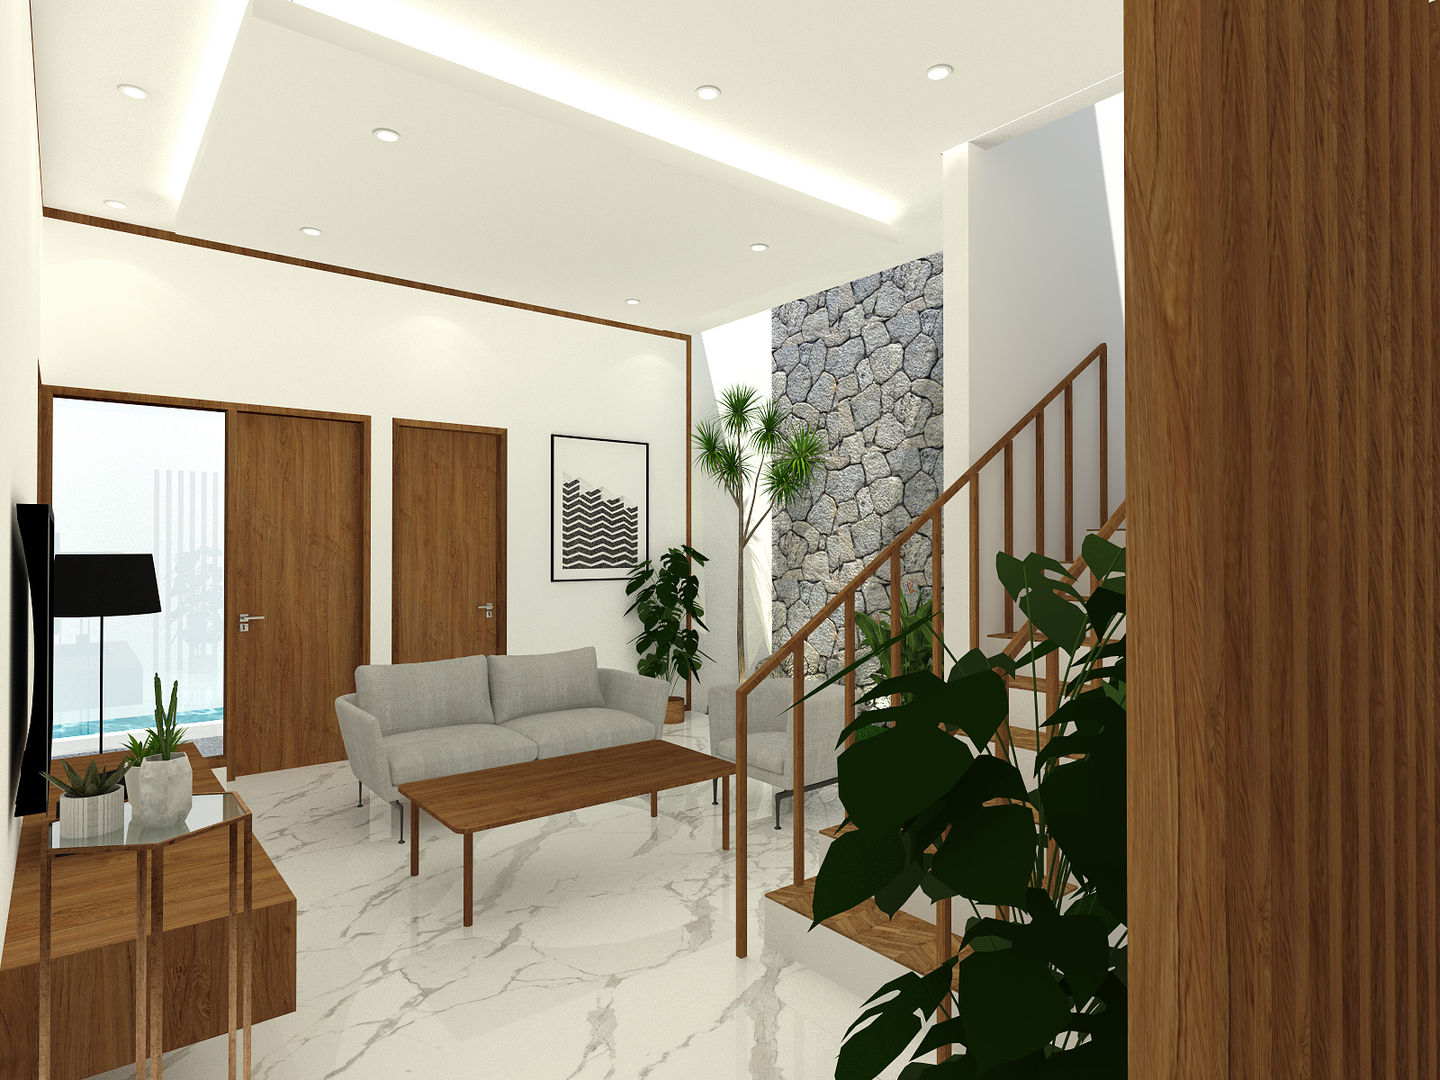 Living Room SEKALA Studio Ruang Keluarga Tropis Kayu Wood effect architecture,arsitektur,design,desain,contemporer,modern,tropical,livingroom,wood,interior